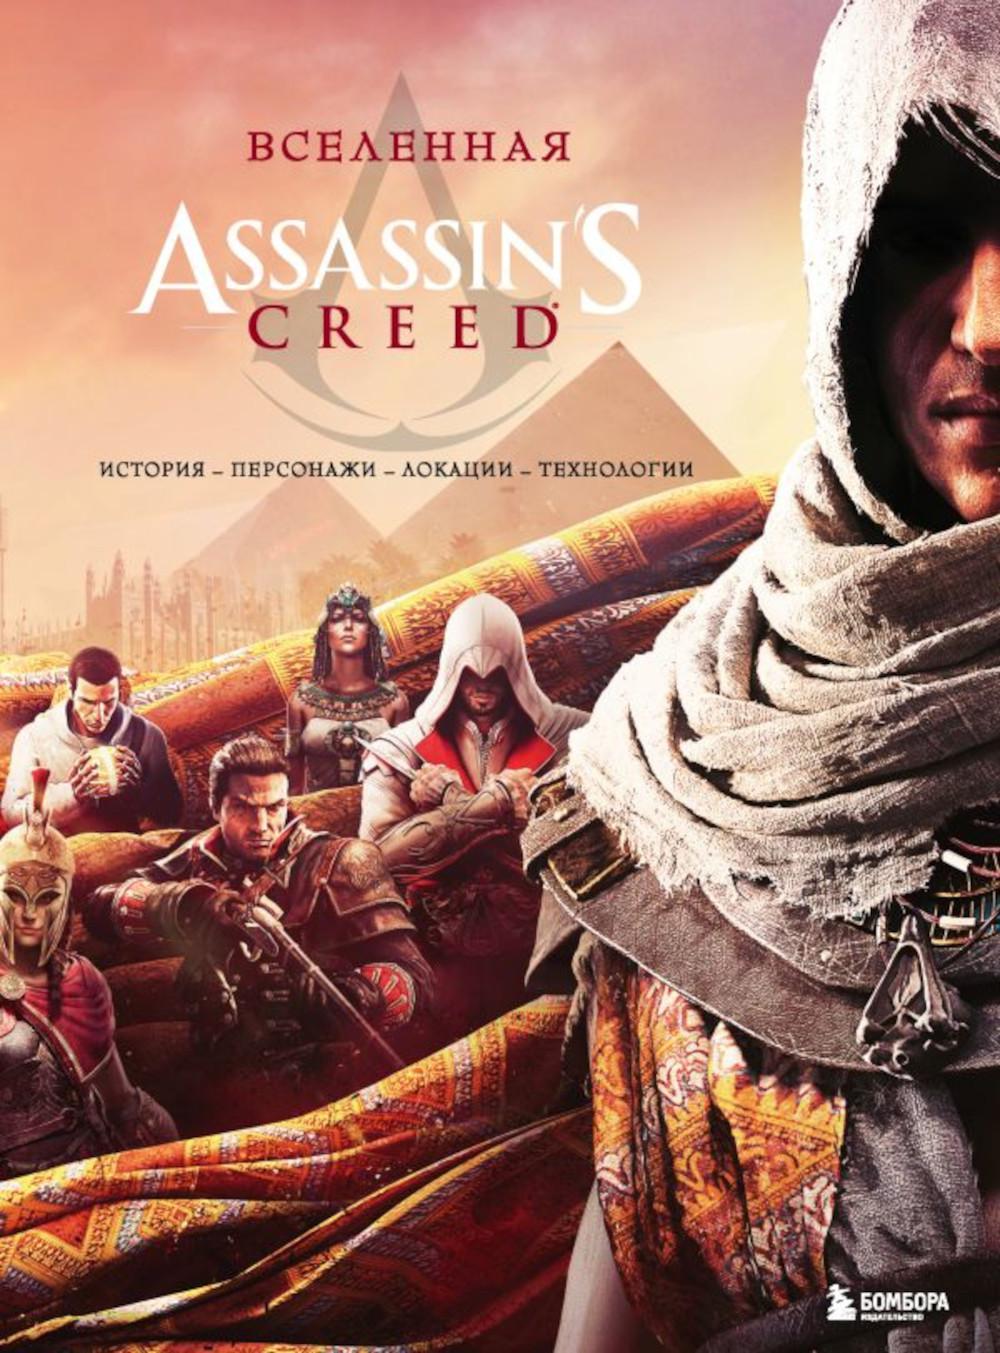 Вселенная Assassin's Creed: история, персонажи, локации, технологии